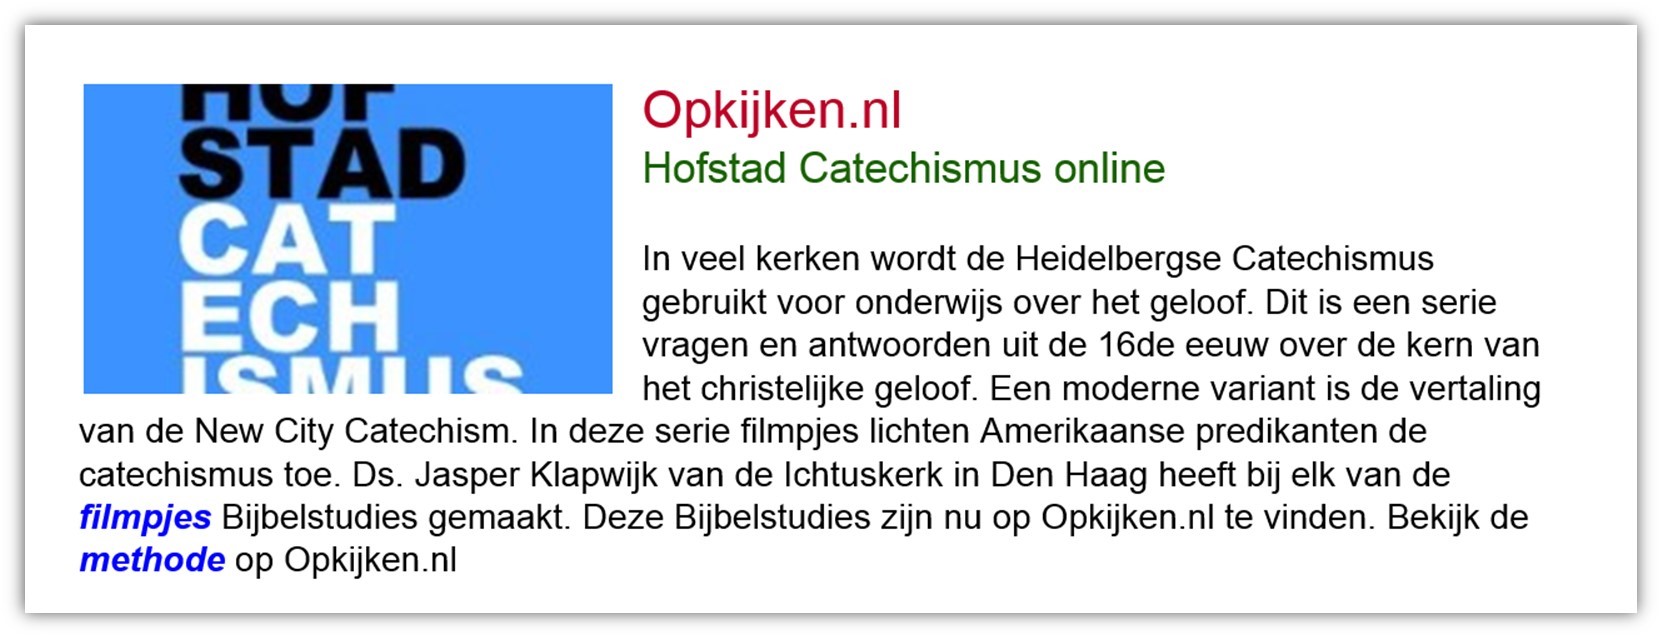 Opkijken.nl